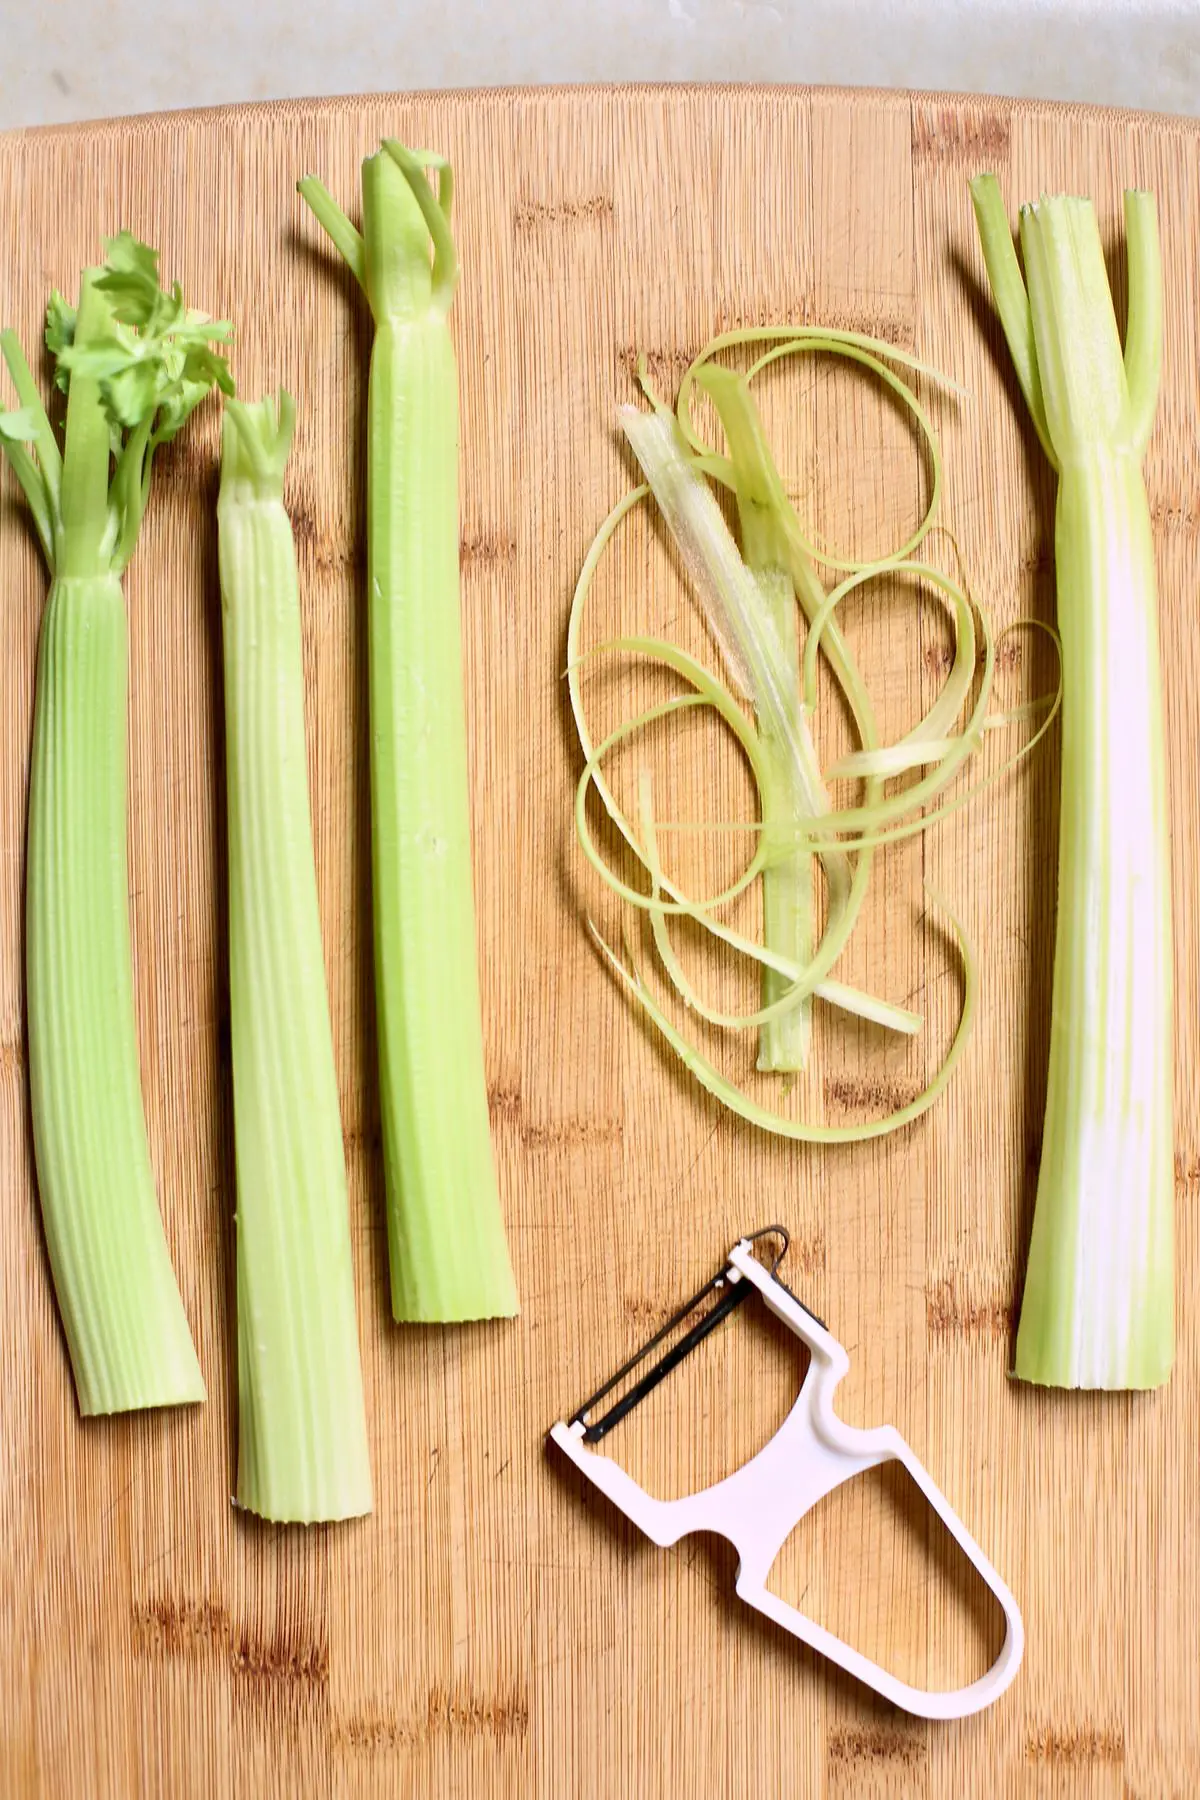 celery on a cutting board being shredded